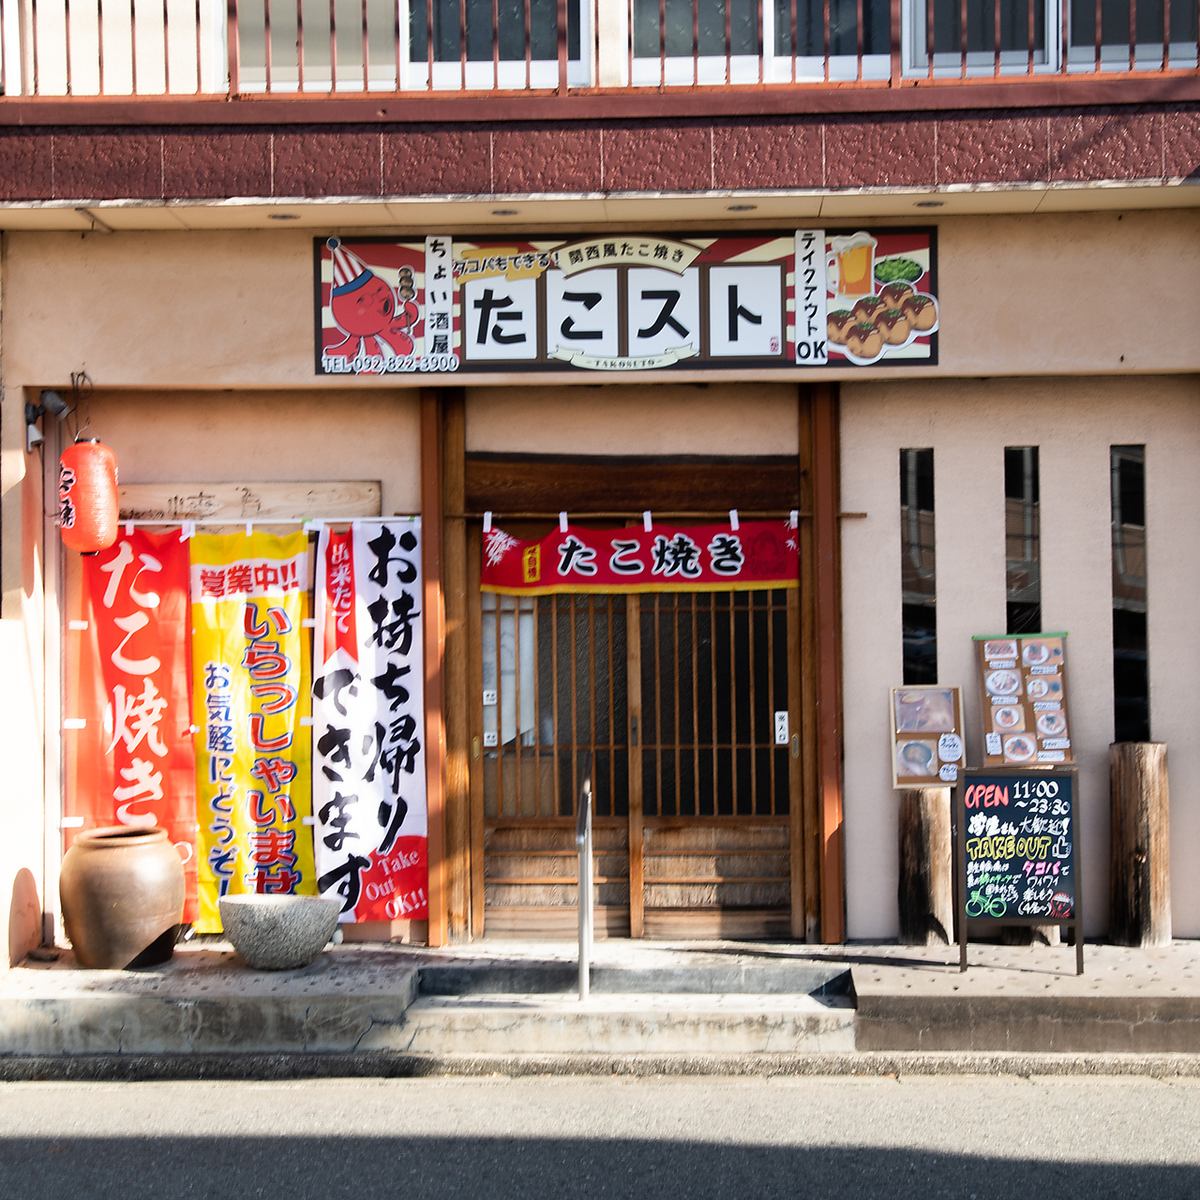 □ You can enjoy delicious Kansai takoyaki freshly baked in Fukuoka □